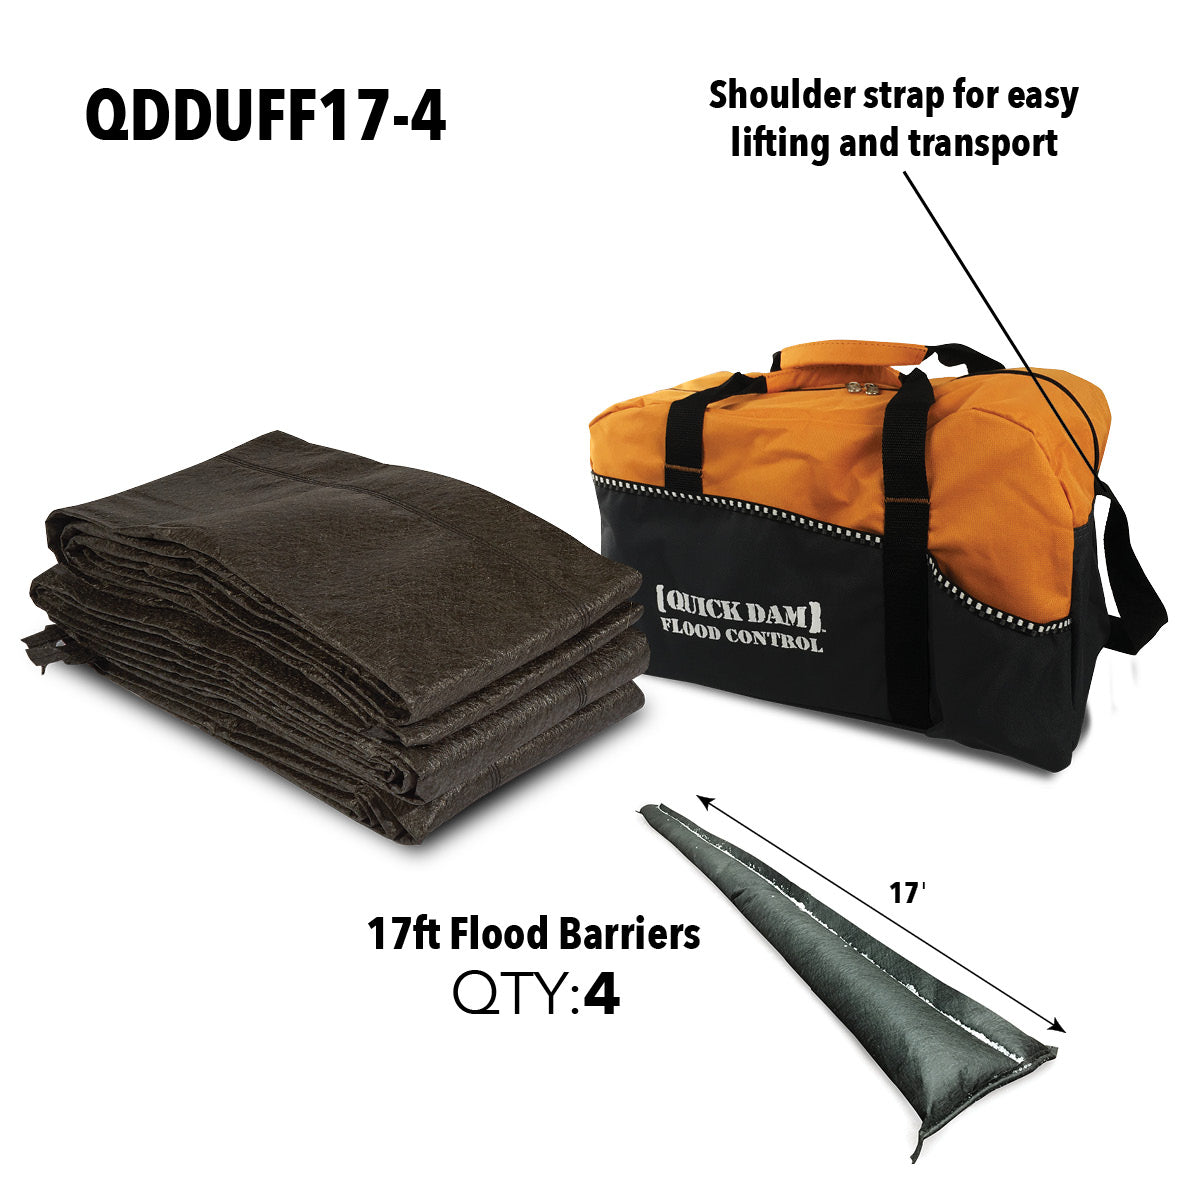 QDDUFF17-4 Duffel Bag Kit